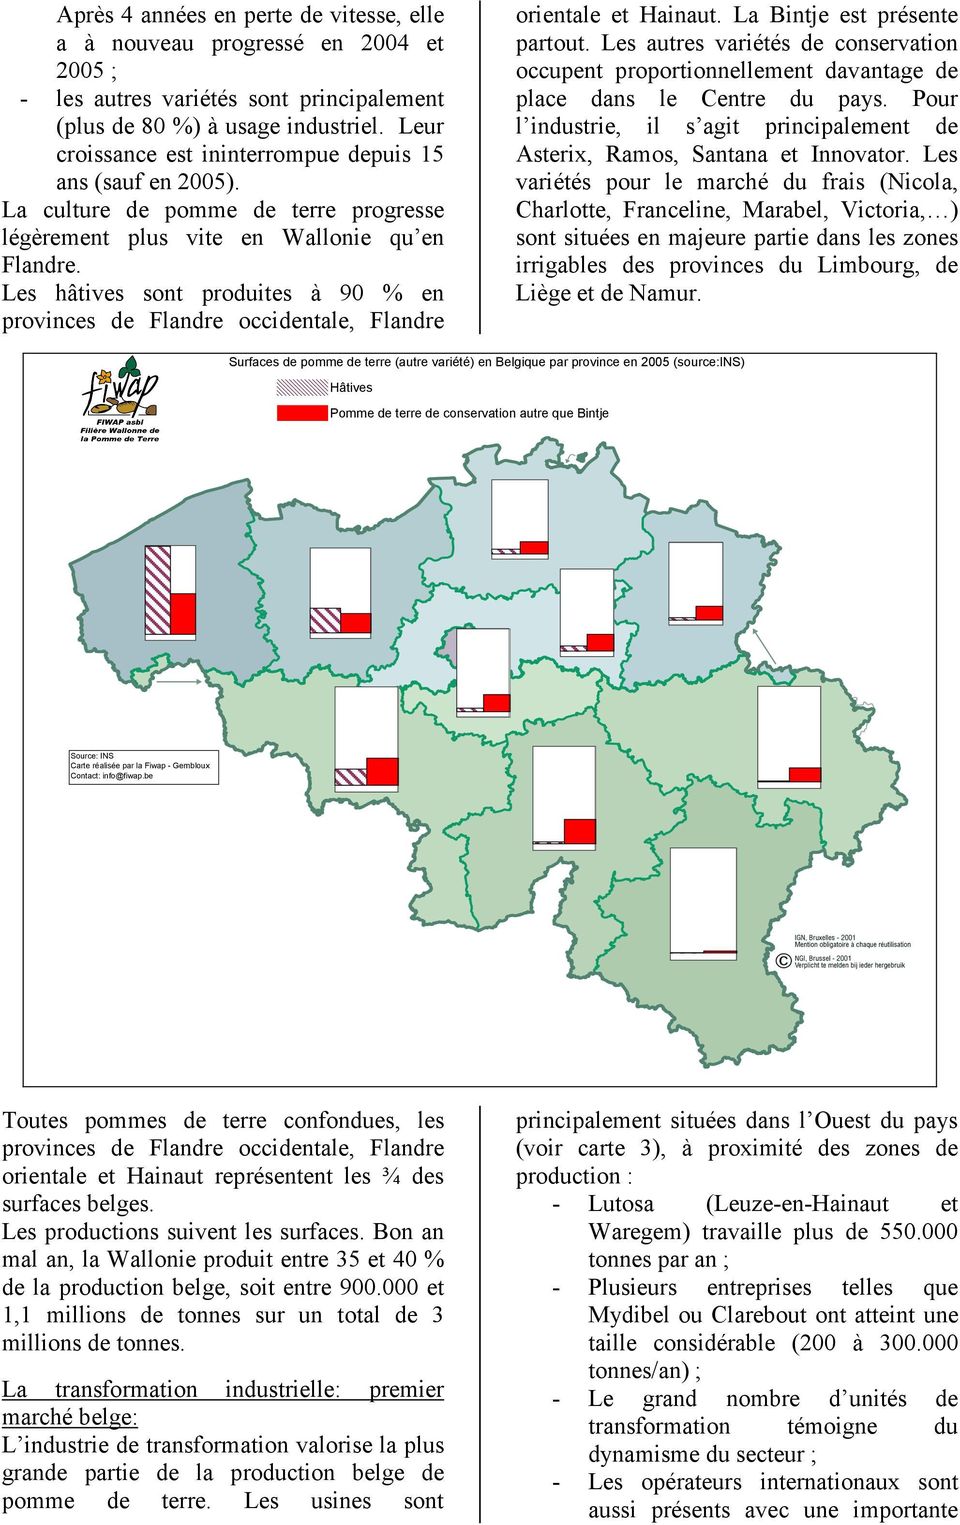 Les hâtives sont produites à 90 % en provinces de Flandre occidentale, Flandre orientale et Hainaut. La Bintje est présente partout.